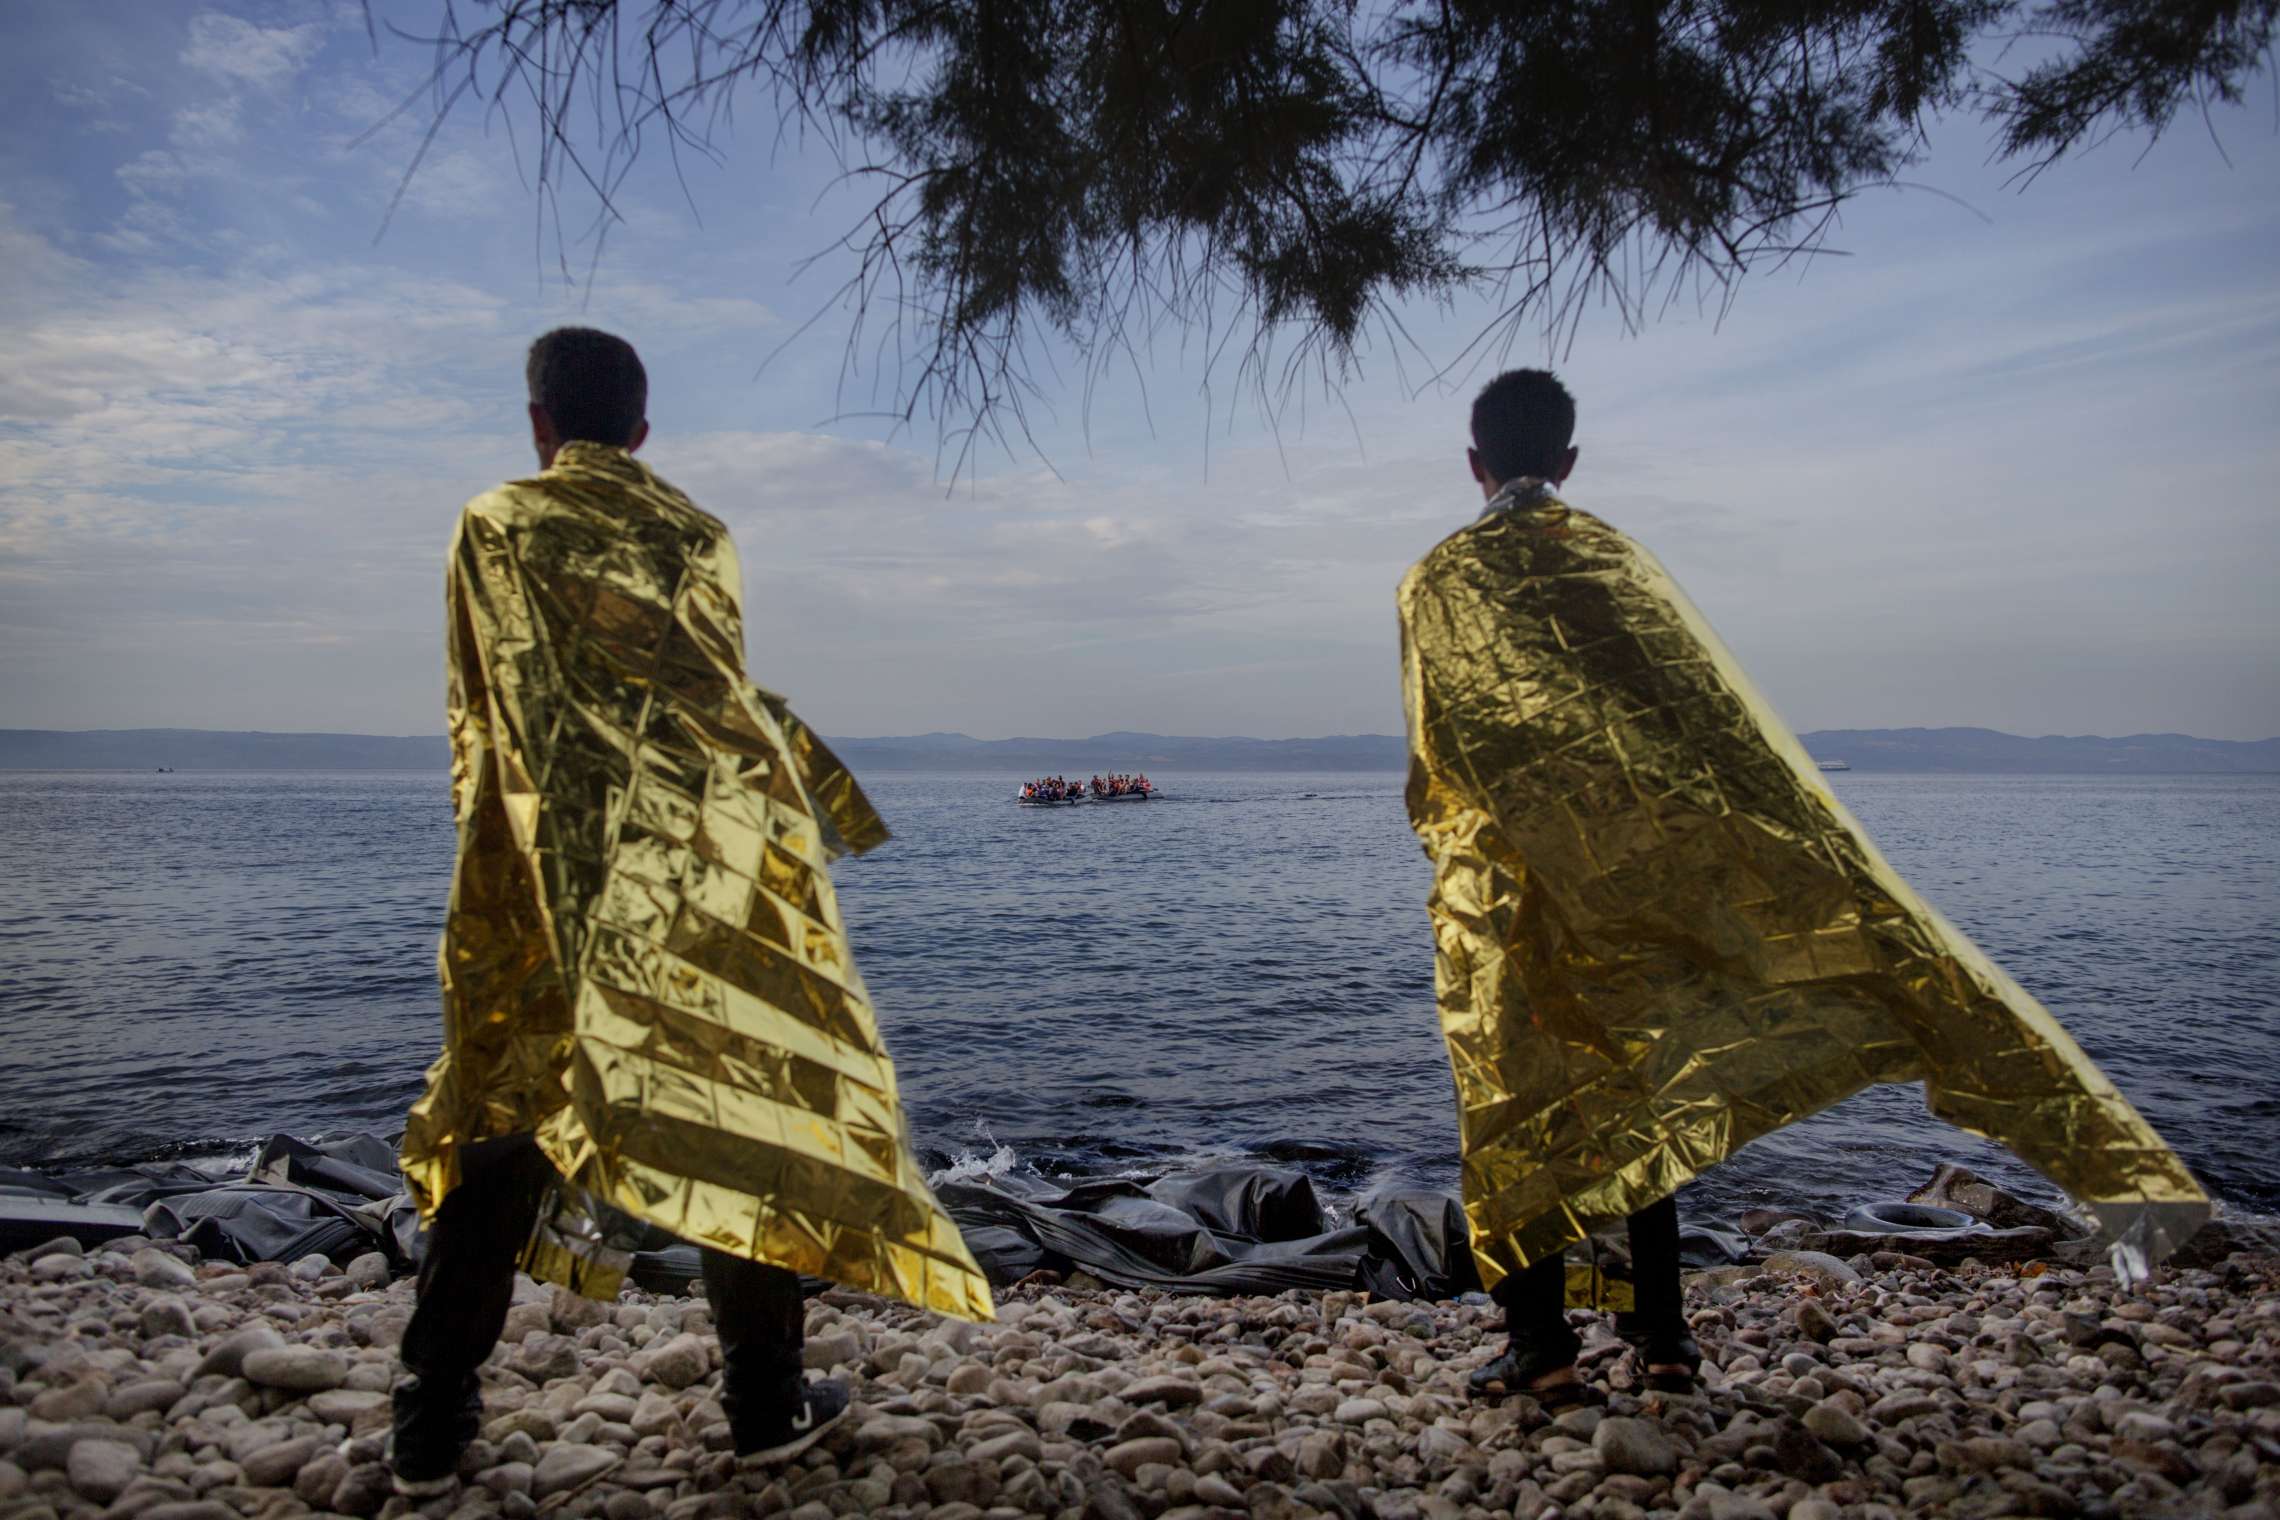 00619 08. Dokumentar utland 09.09.2015 04/10 Flukten til Europa To menn som ankom Lesbos noen minutter tidligere, forsøker å få tilbake vamen med varmefolier delt ut av frivillige mens de ser to nye gummibåter med flyktninger ankomme. Denne dagen kom rundt 40 båter til den greske øya med mer enn 2.000 flyktninger. Over en million flyktninger har kommet til Europa i 2015 via sjøveien, en stor andel av dem syrere som rømmer fra den brutale borgerkrigen i deres hjemland. De aller fleste av dem har fulgt ruten gjennom Tyrkia, Hellas, Balkan til nord-Europa. Tusener har omkommet i overfylte båter på Middelhavet, desperate flyktninger har levd i overfylte leire, europeiske myndigheter har stått overfor den største flyktningkrisen på kontinentet siden 2. verdenskrig. Krisen har skapt splittelse i EU, grensegjerder har blitt bygget, men mest av alt har den bragt de globale utfordringene inn på vår dørstokk. Jeg fulgte i flyktningene fotspor, fra grensen mellom Syria og Tyrkia, til Hellas, Makedonia, Serbia, Kroatia, Slovenia til Tyskland.